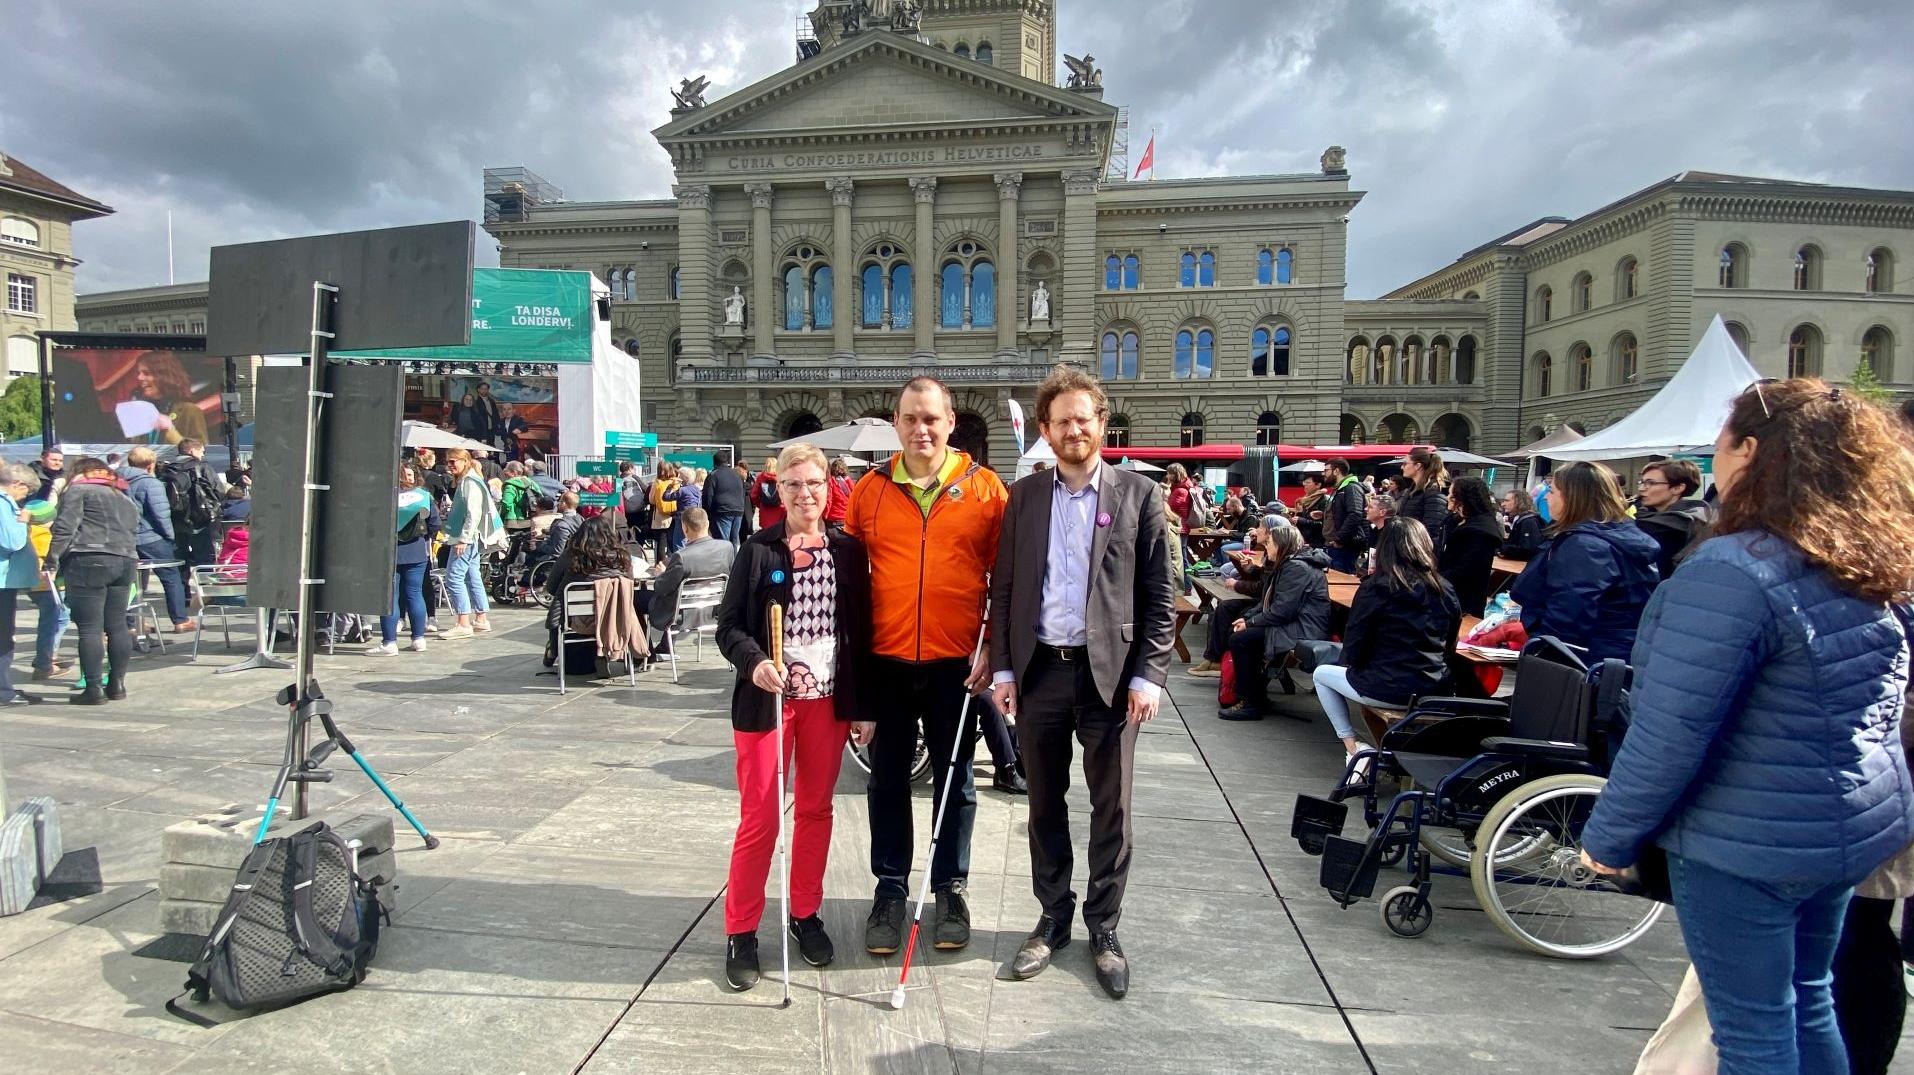 Les trois candidats au Conseil national malvoyants Marianne Plüss (Berne), Sébastien Piguet (Vaud) et Cyril Mizrahi (Genève) sont ensemble devant le Palais fédéral.